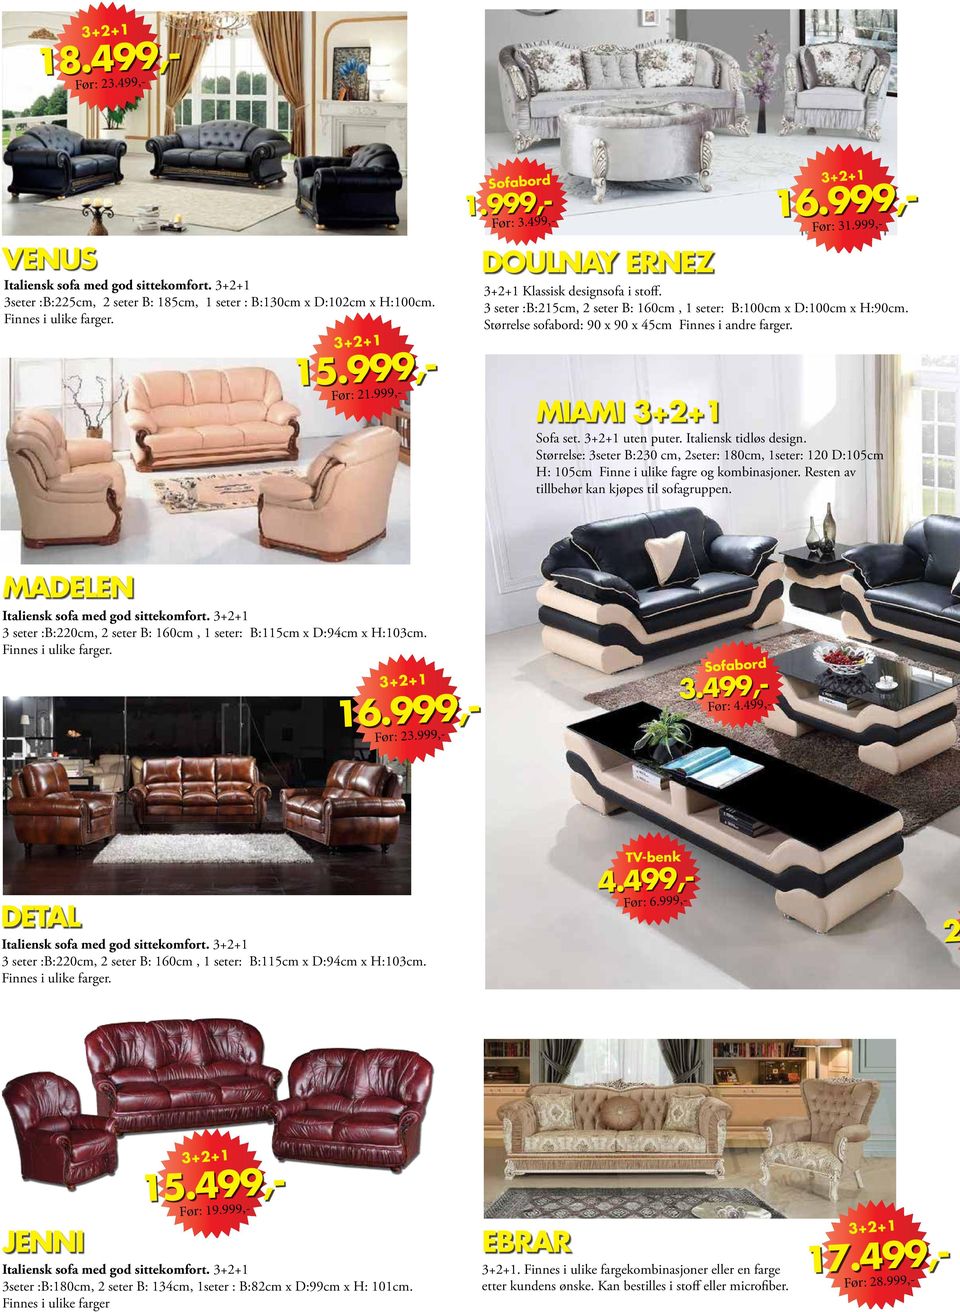 Størrelse sofabord: 90 x 90 x 45cm Finnes i andre farger. MIAMI Sofa set. uten puter. Italiensk tidløs design.